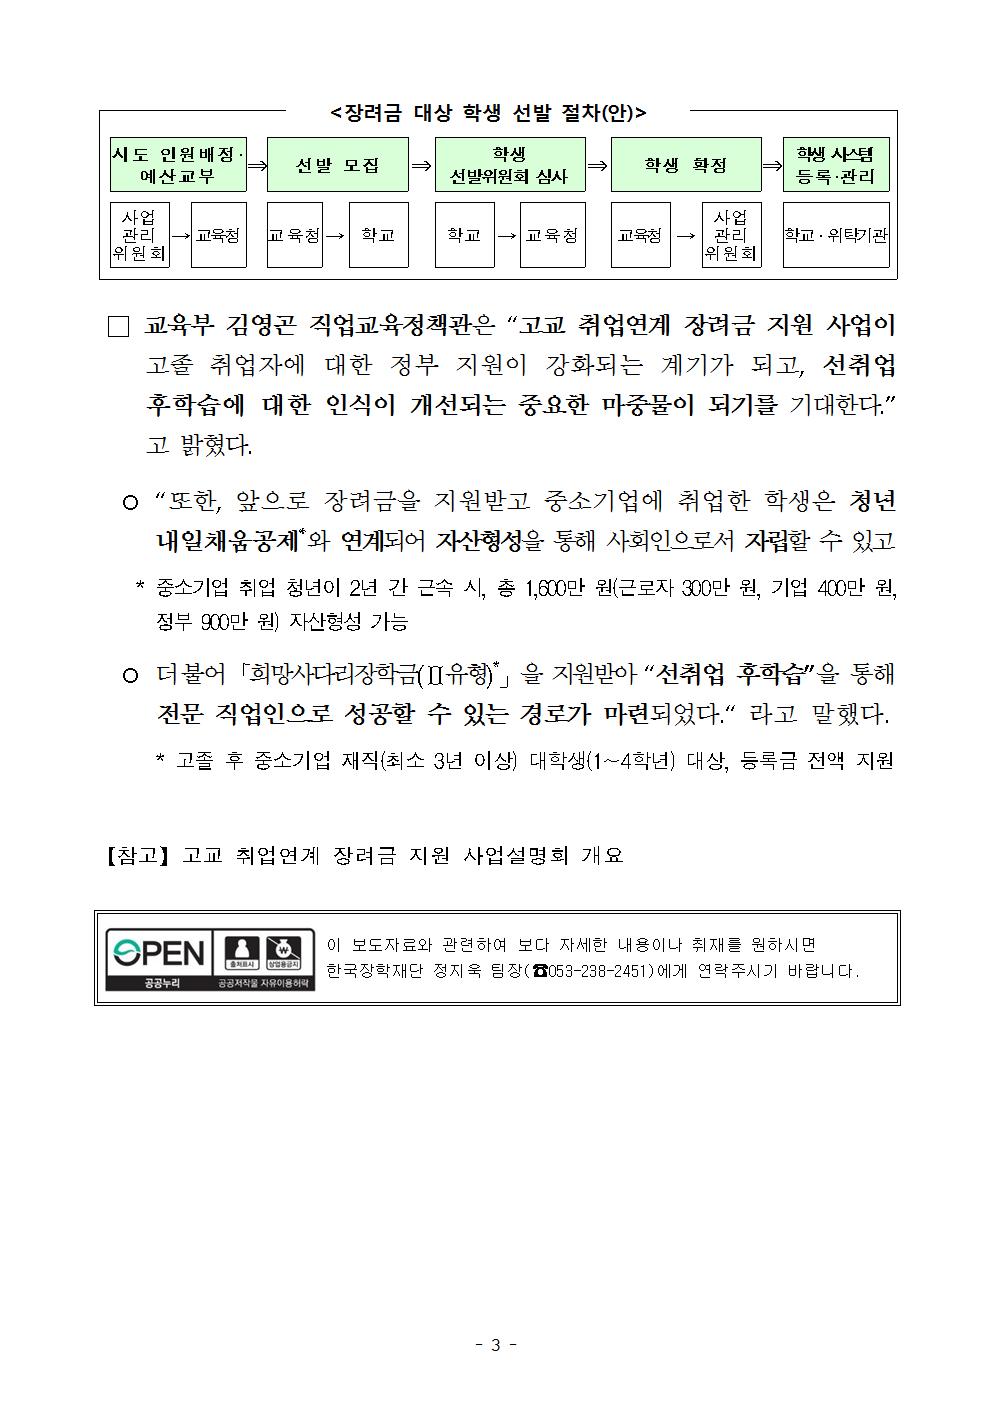 08-21(화)[보도자료] 고교 취업연계 장려금 지원사업 기본계획 발표003.jpg